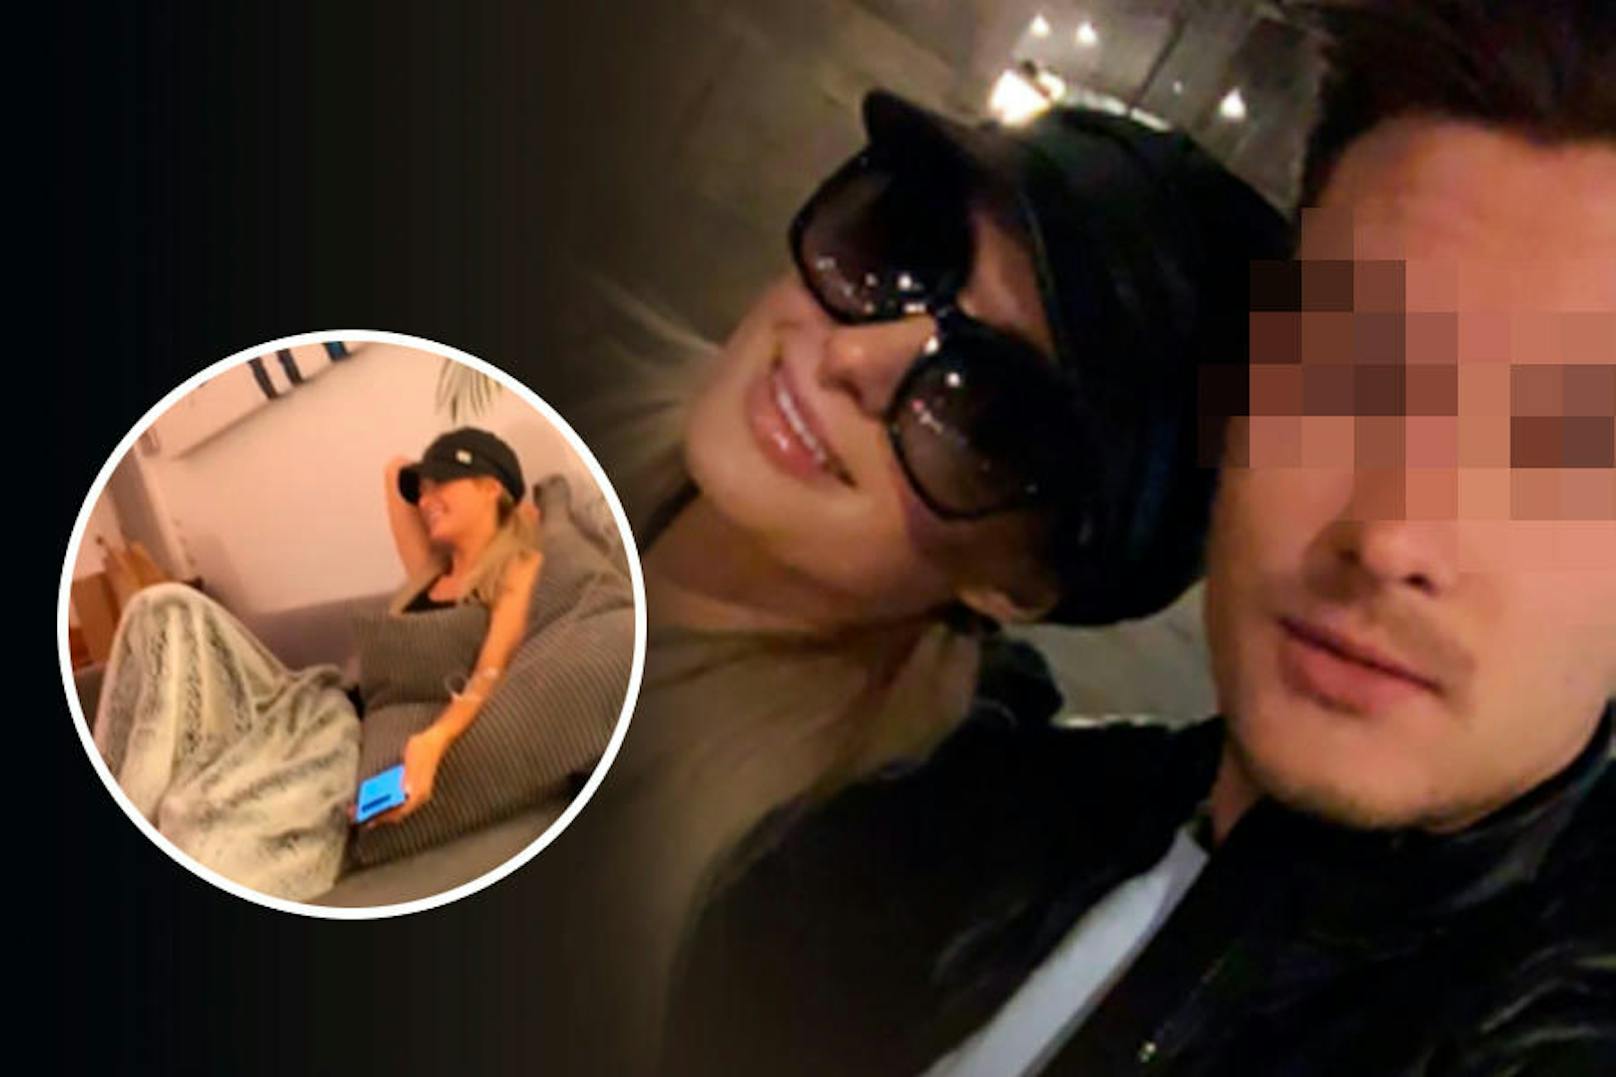 Paris Hilton in Wien: Erst mit "Party-Infusion" auf der Couch, dann mit Sonnenbrille beim Fortgehen